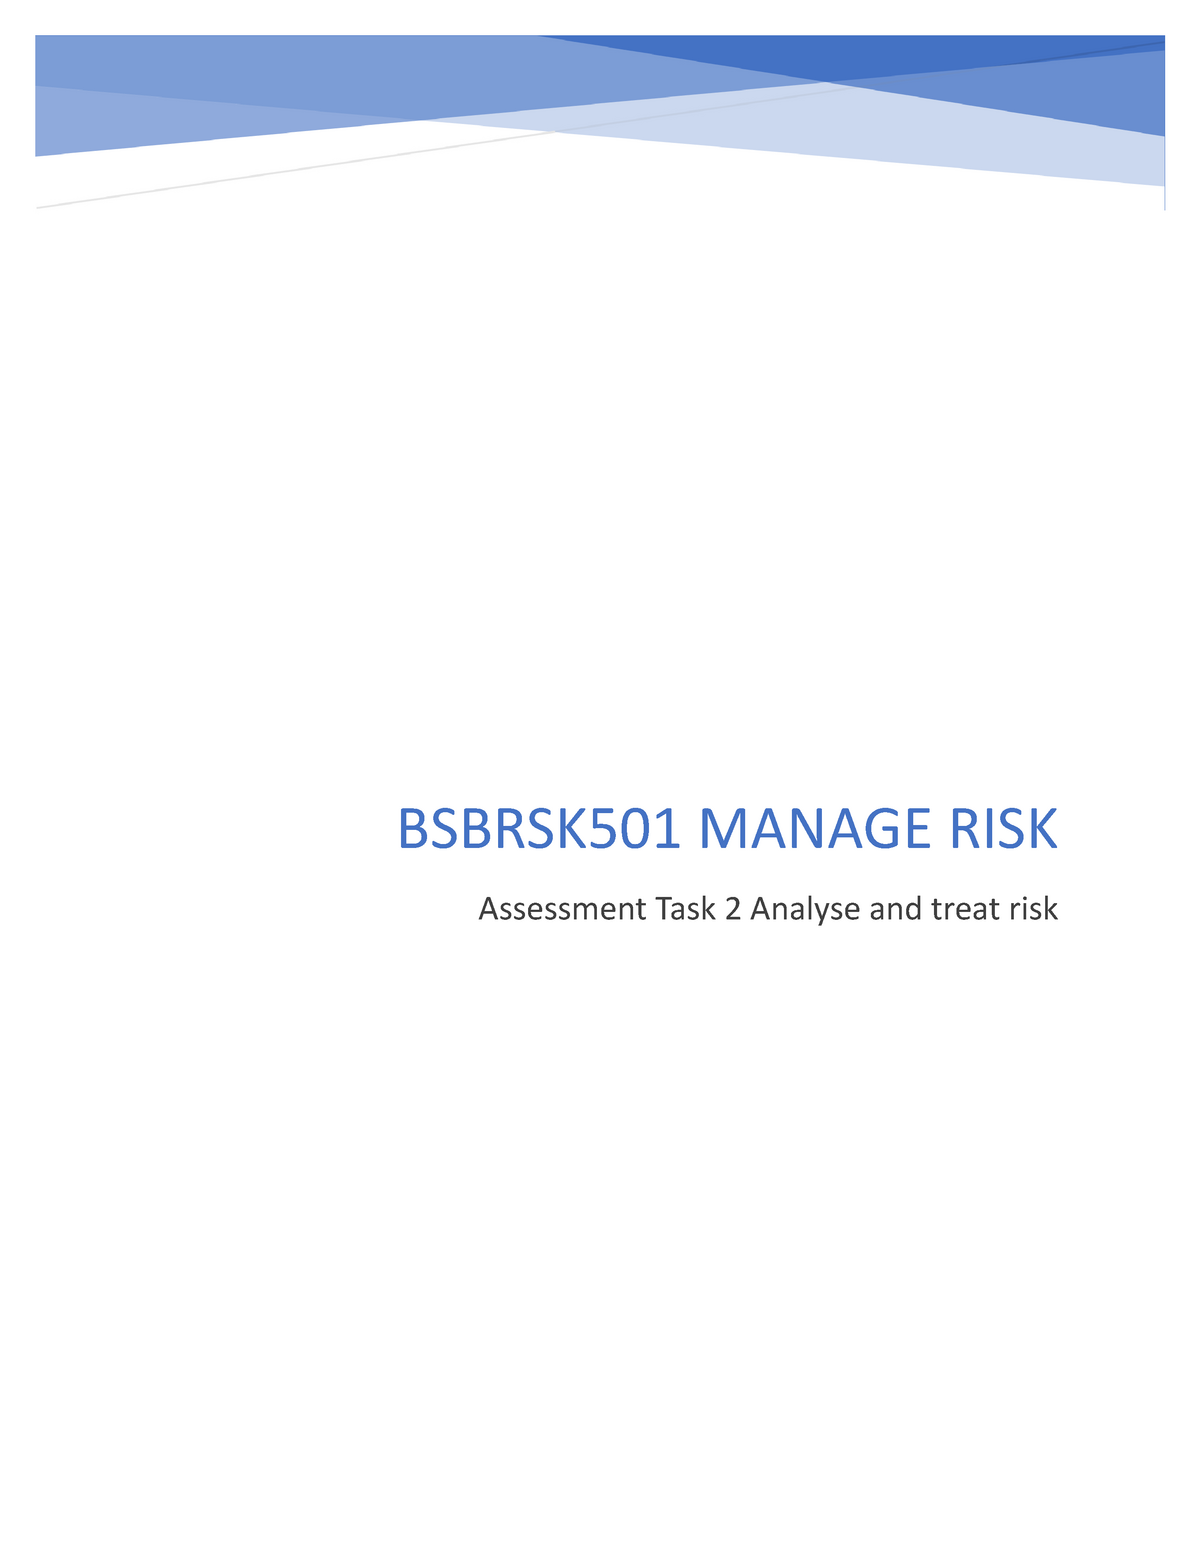 bsbrsk501 manage risk assessment task 2 case study